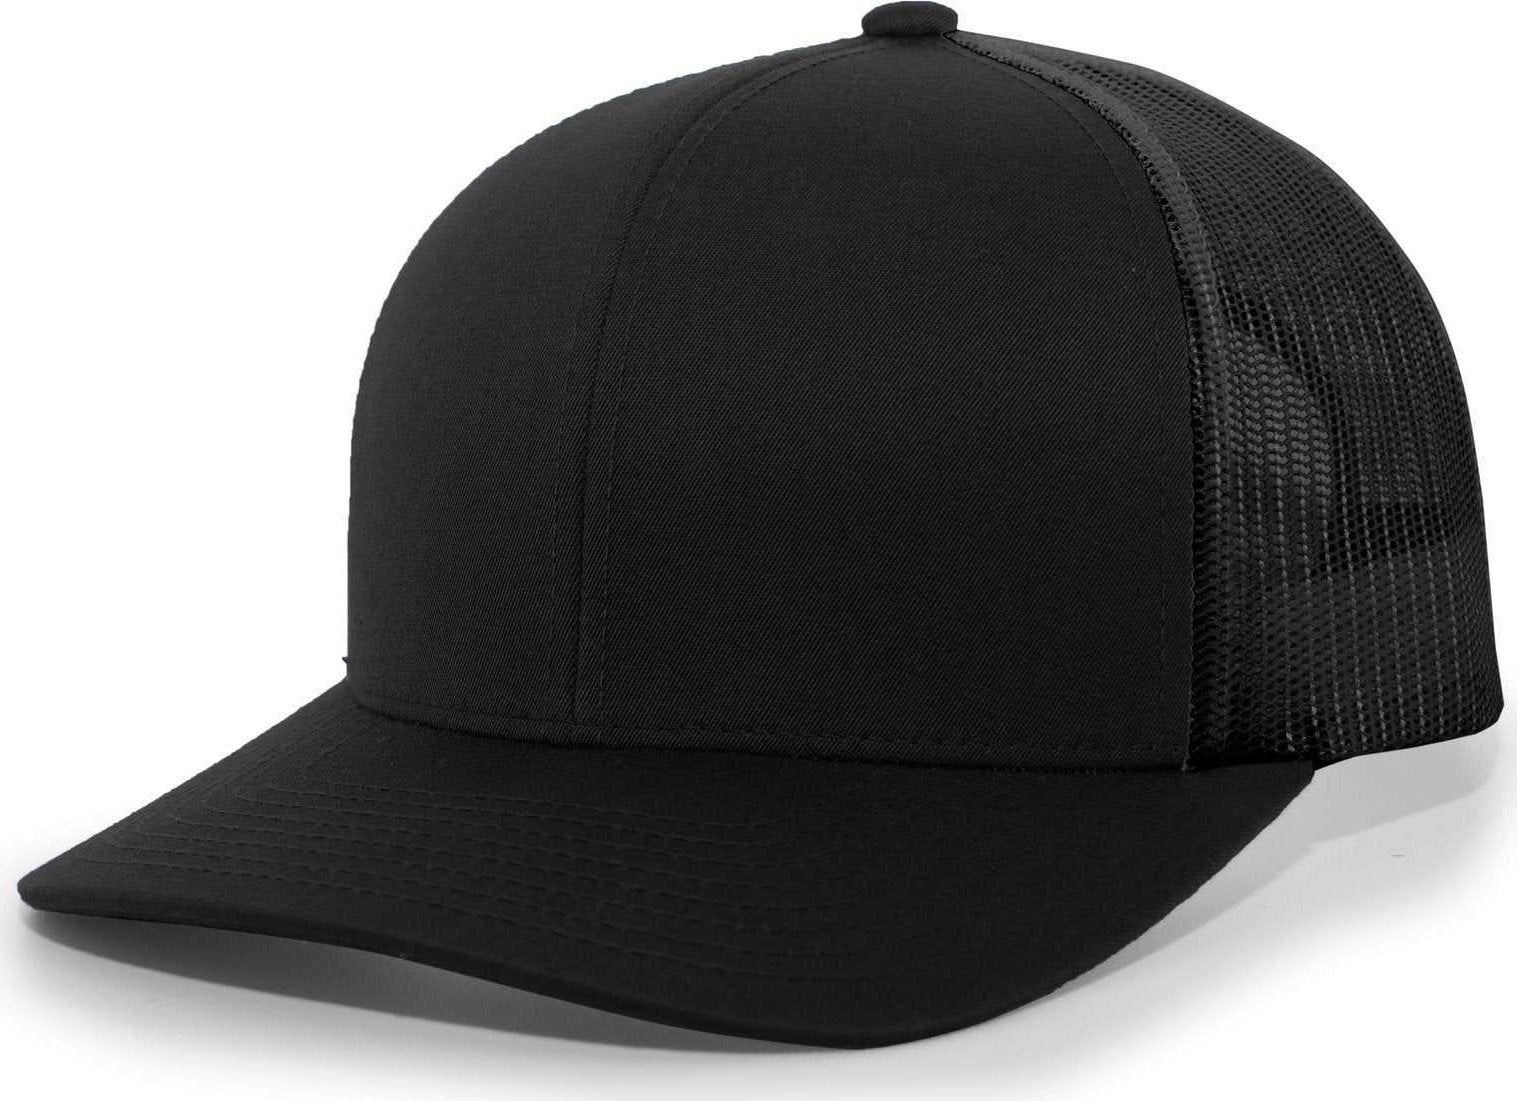 Pacific Headwear 104C Trucker Snapback Cap - Black Black - HIT a Double